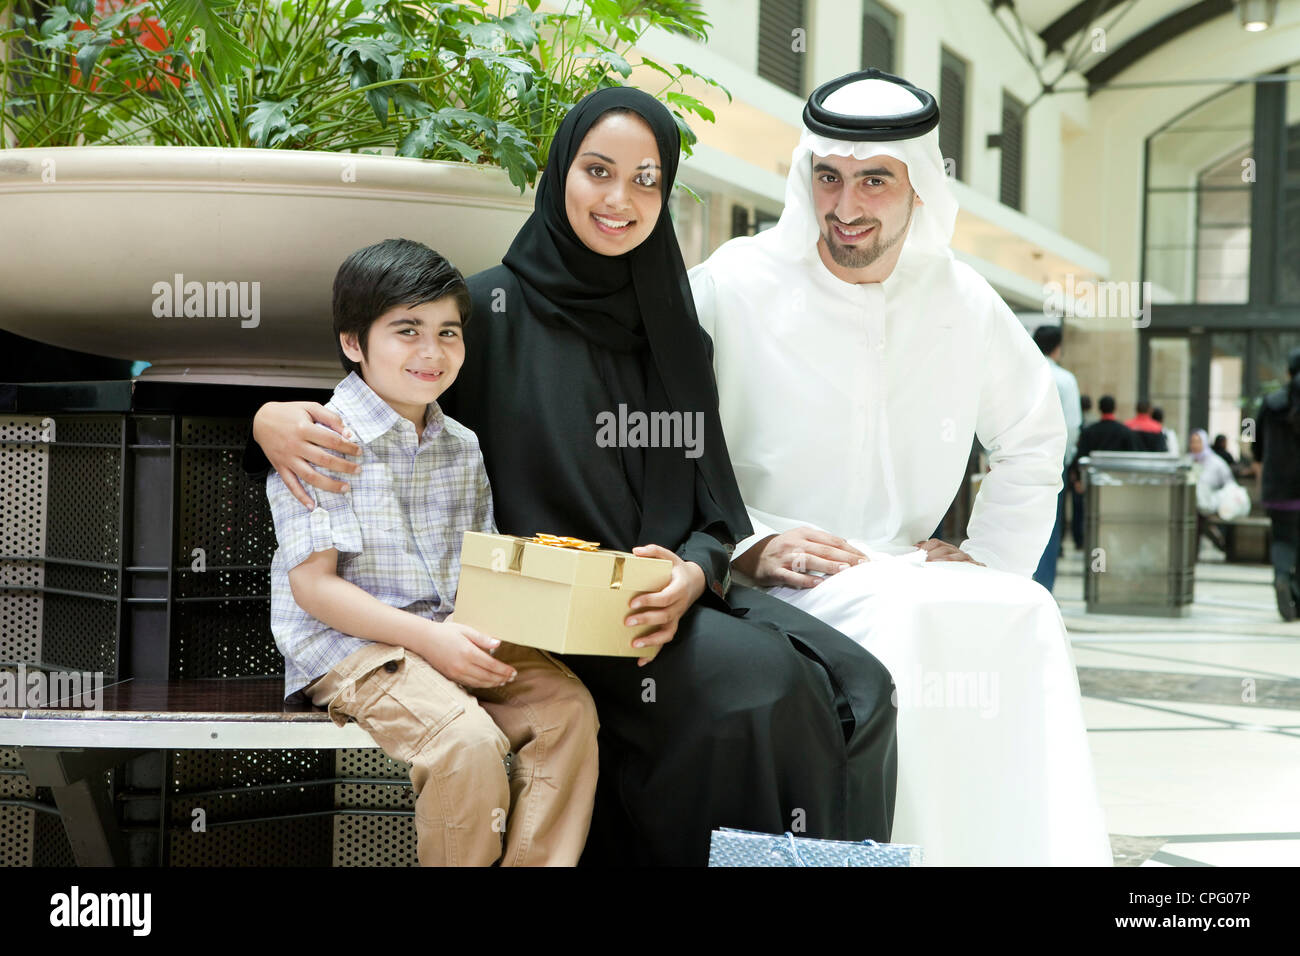 Portrait de famille arabe avec des cadeaux assis au centre d'achat. Banque D'Images